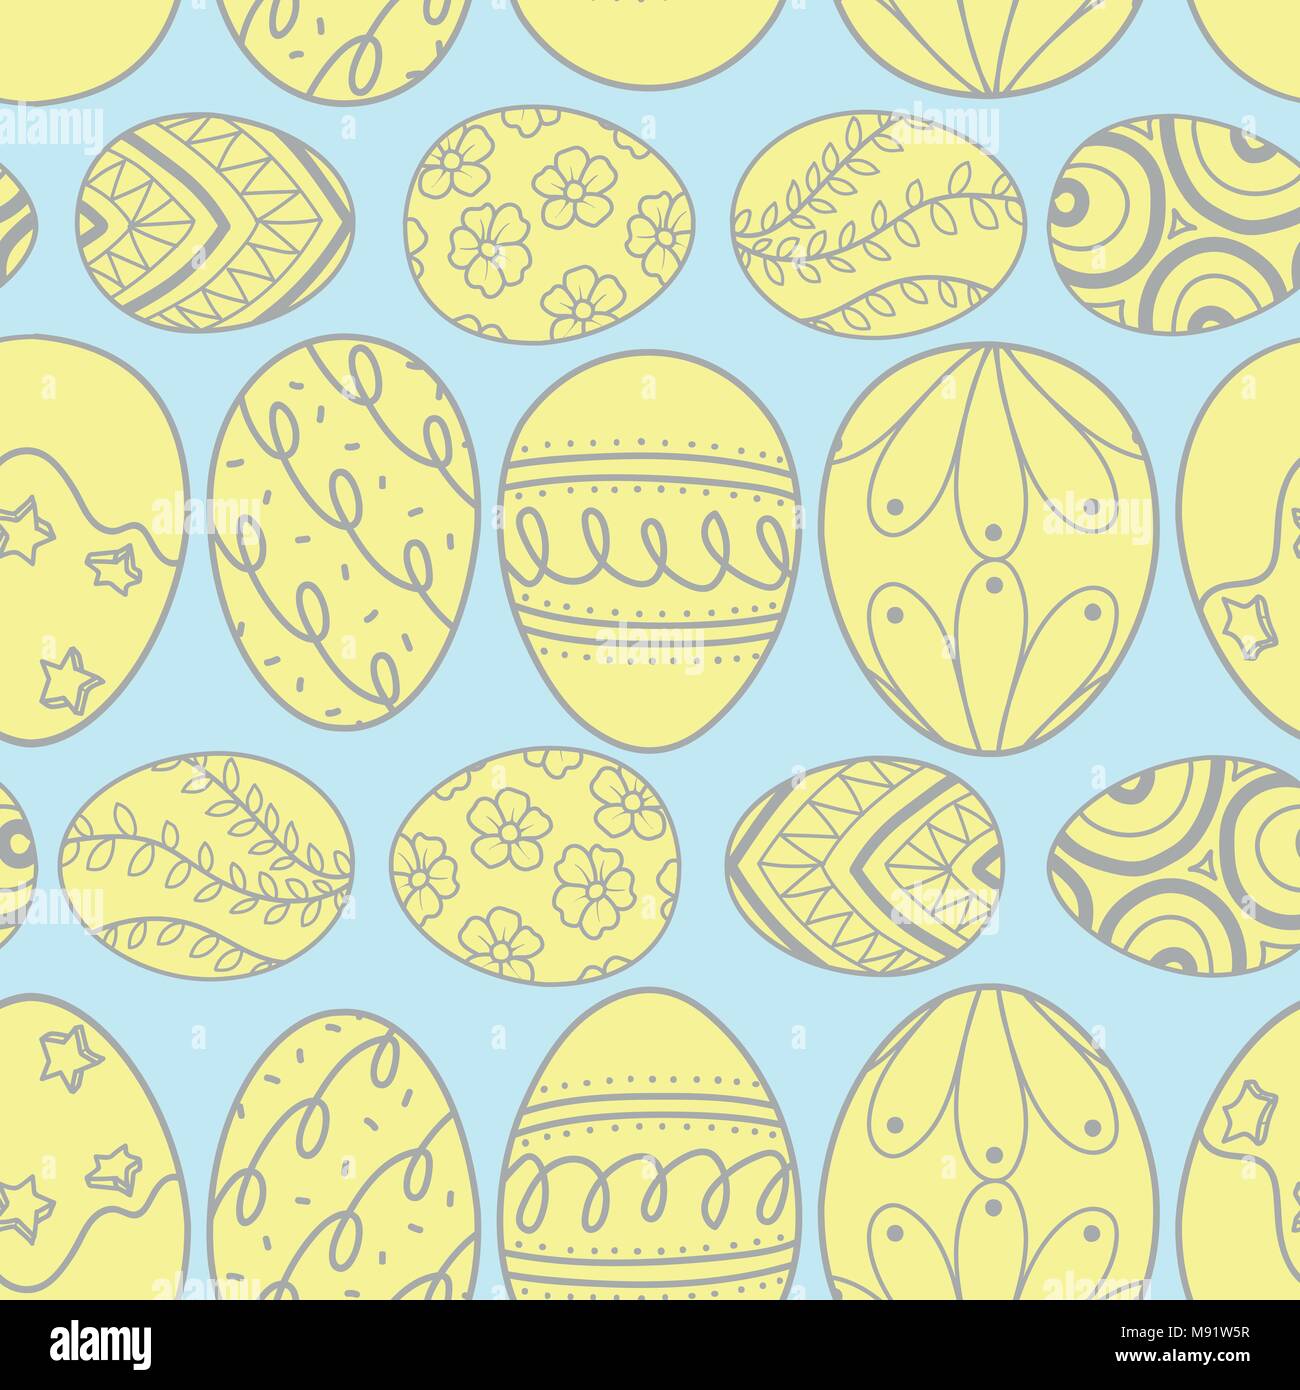 Ostereier in grauen Umrisse und gelbe Ebene Line up auf blauem Hintergrund. Süße Hand gezeichnet nahtlose Muster für die Osterfestspiele in Vektor illustr Stock Vektor